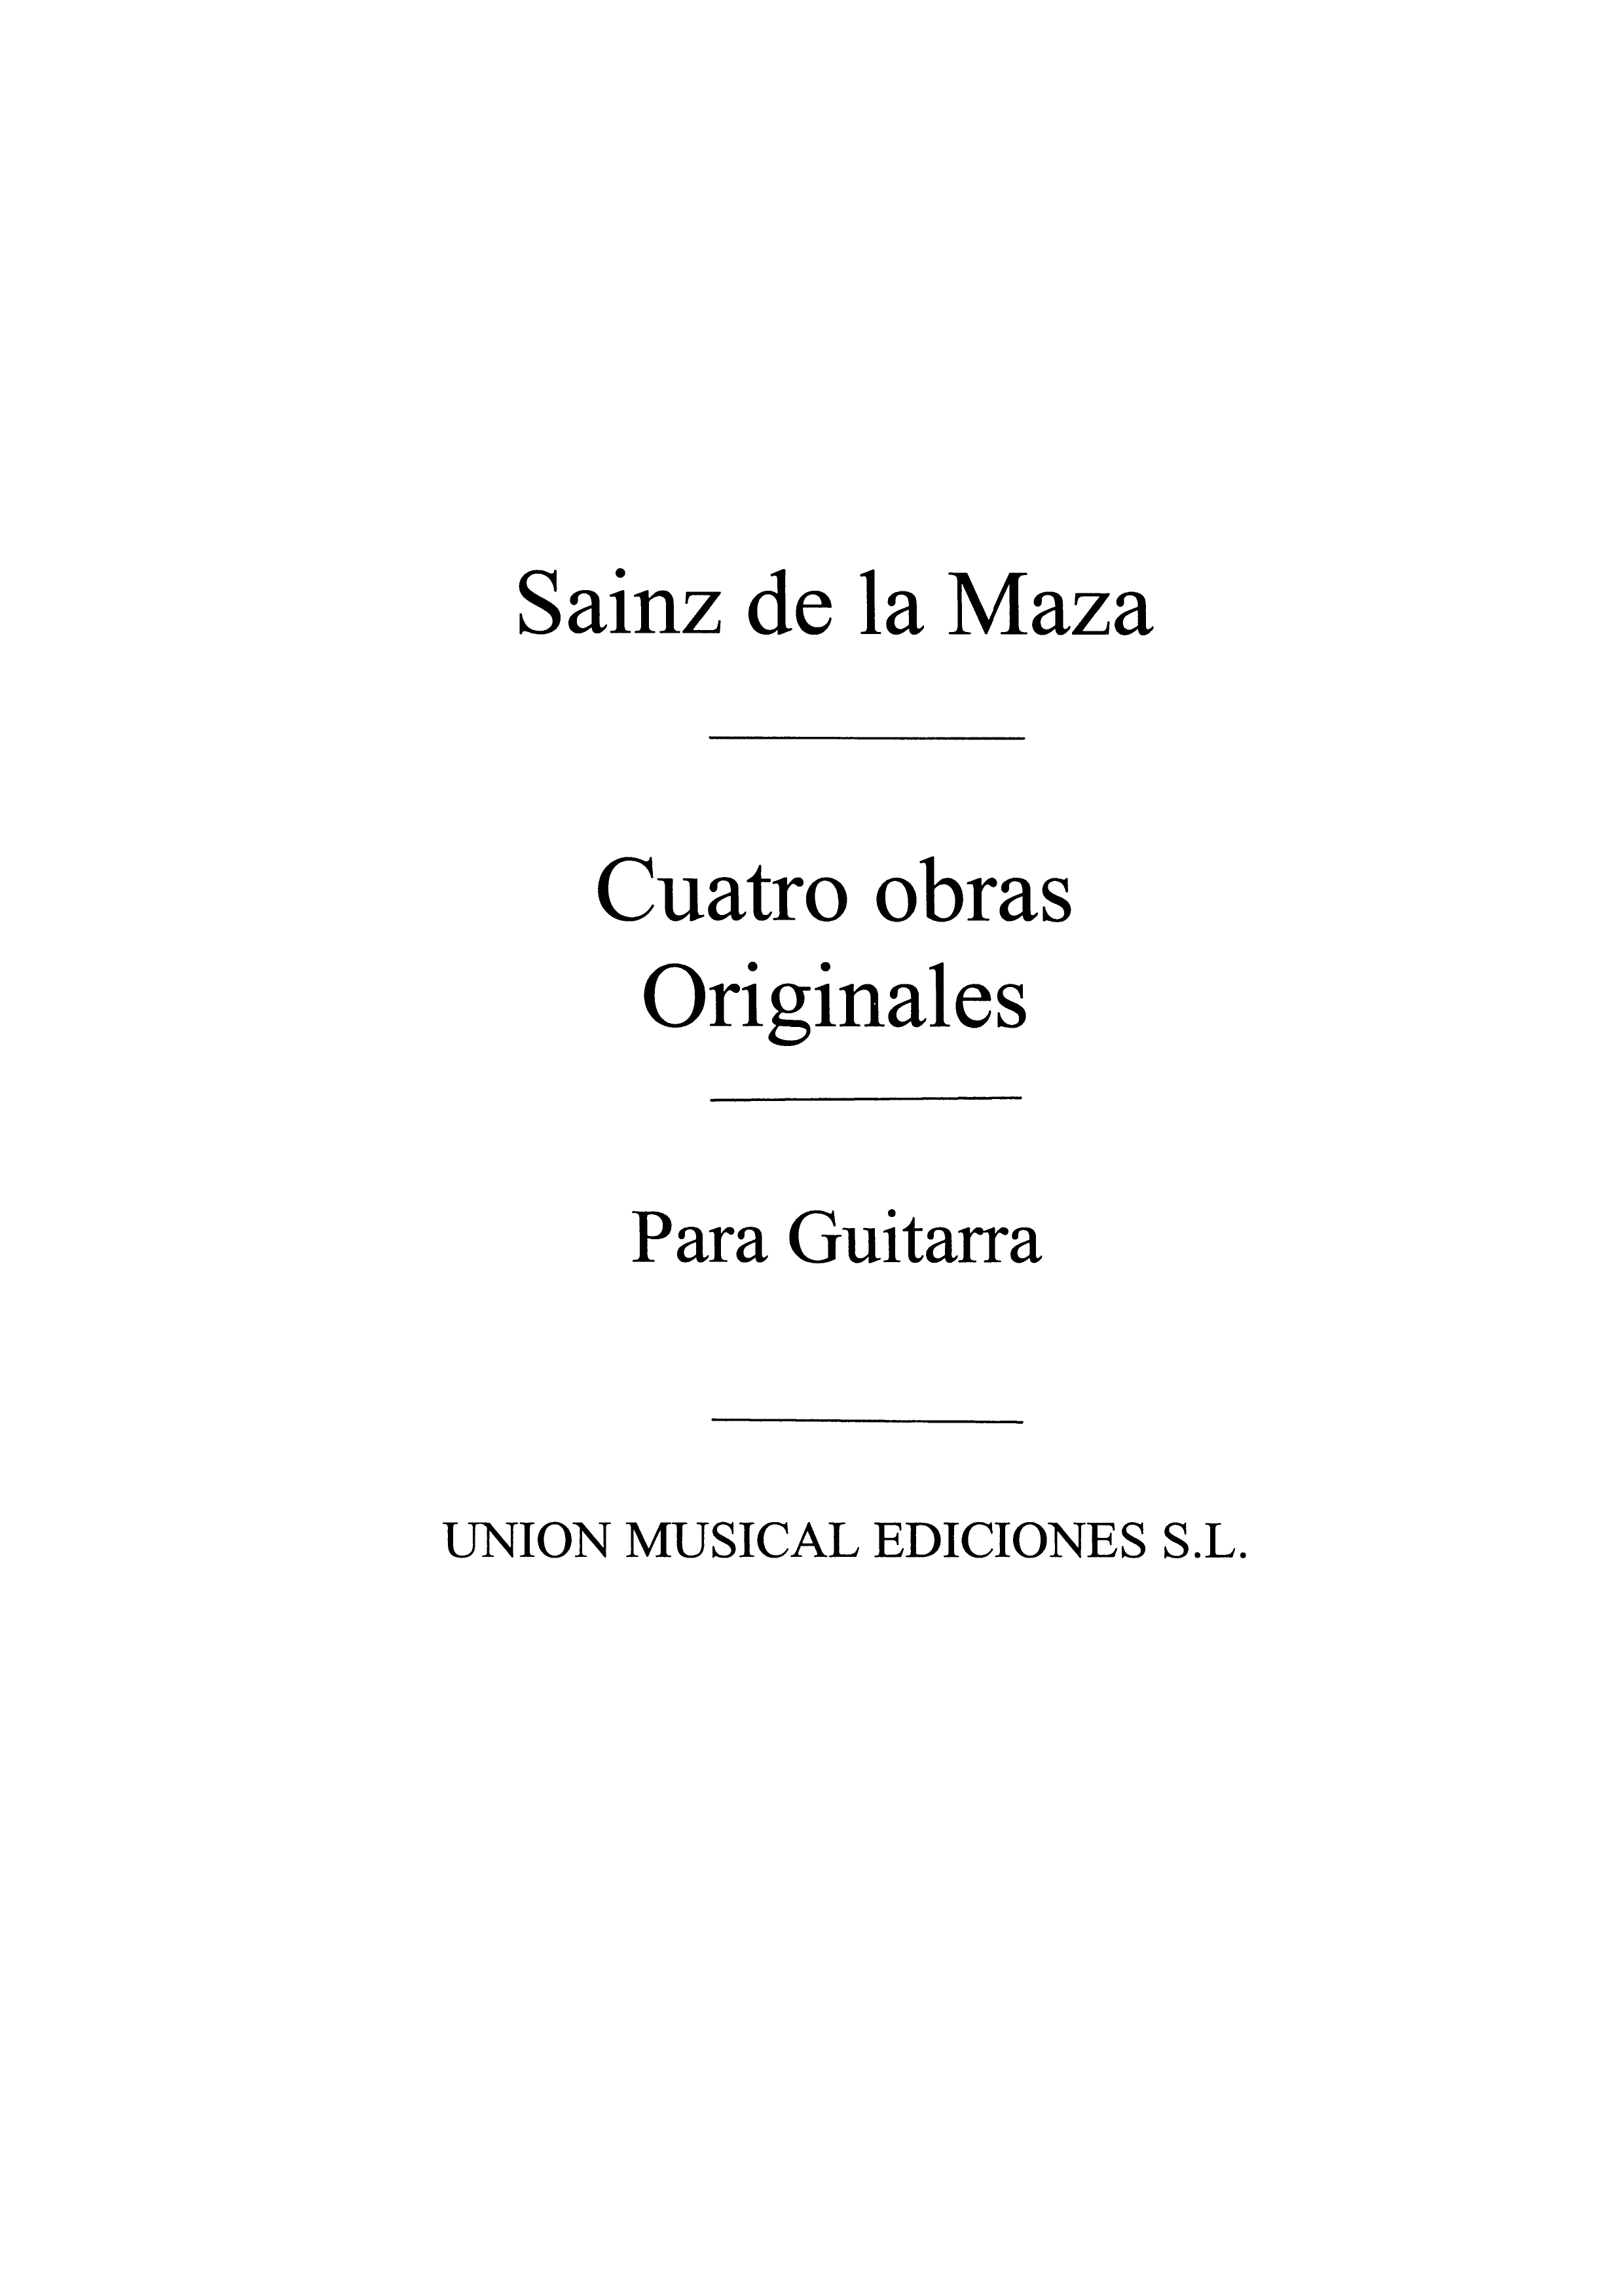 Regino Sainz de la Maza: Cantilena: Guitar: Instrumental Work